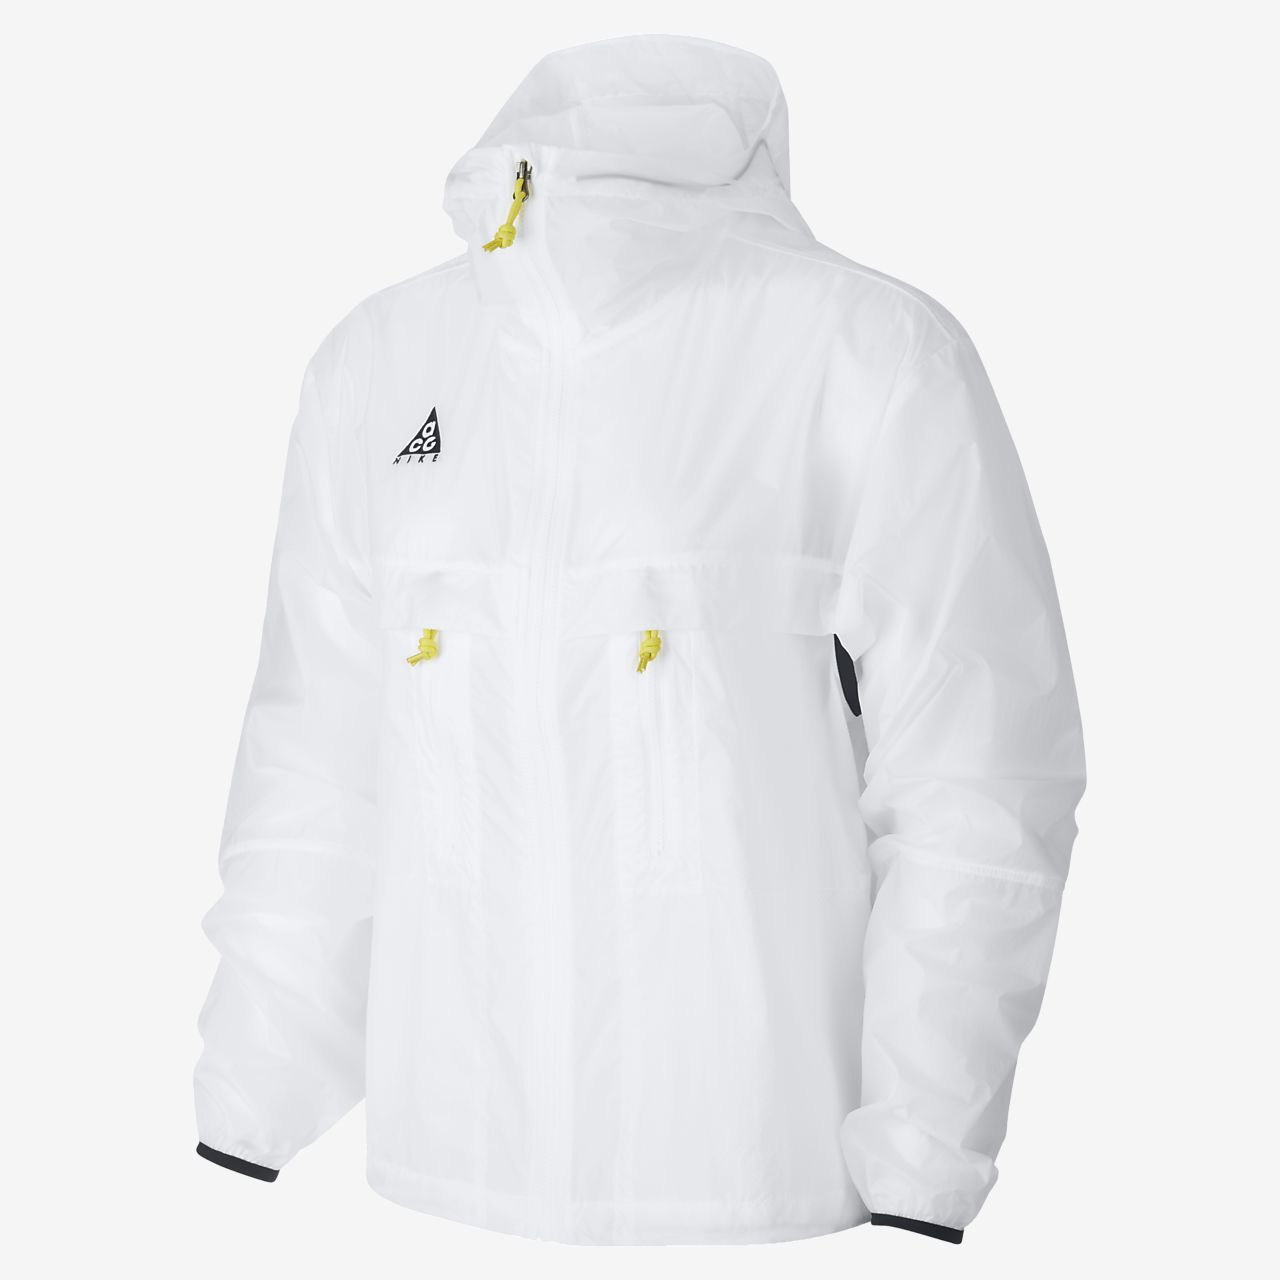 white acg jacket